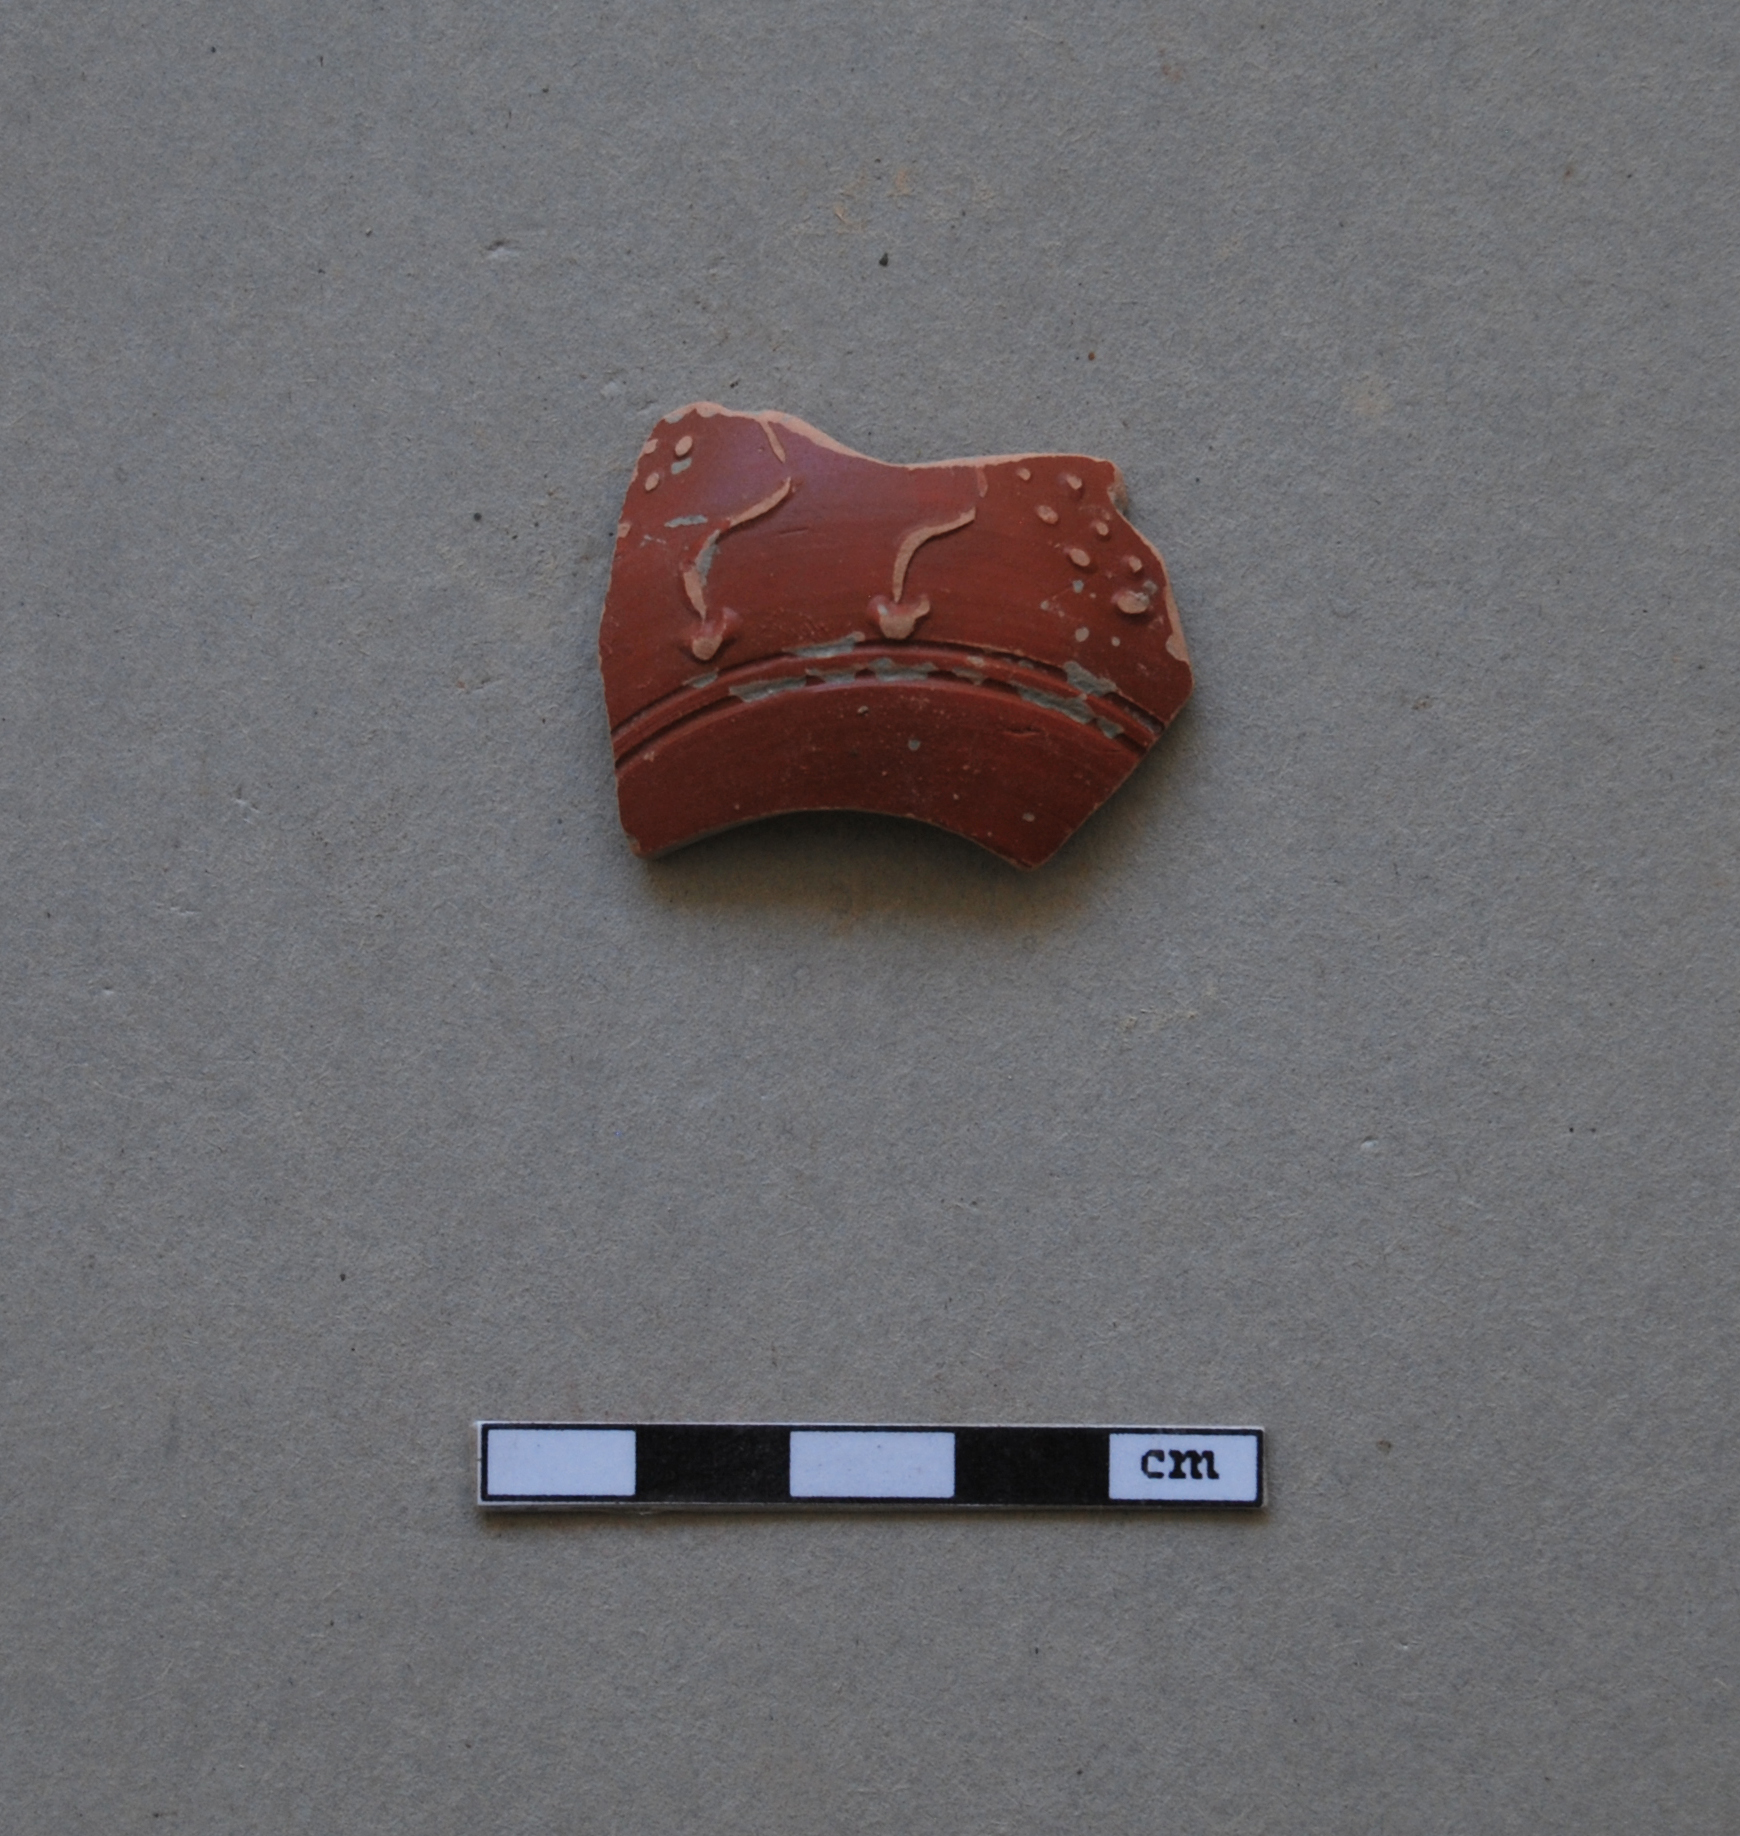 coppa, ceramica in terra sigillata tardo-italica (meta' Eta' romana imperiale)